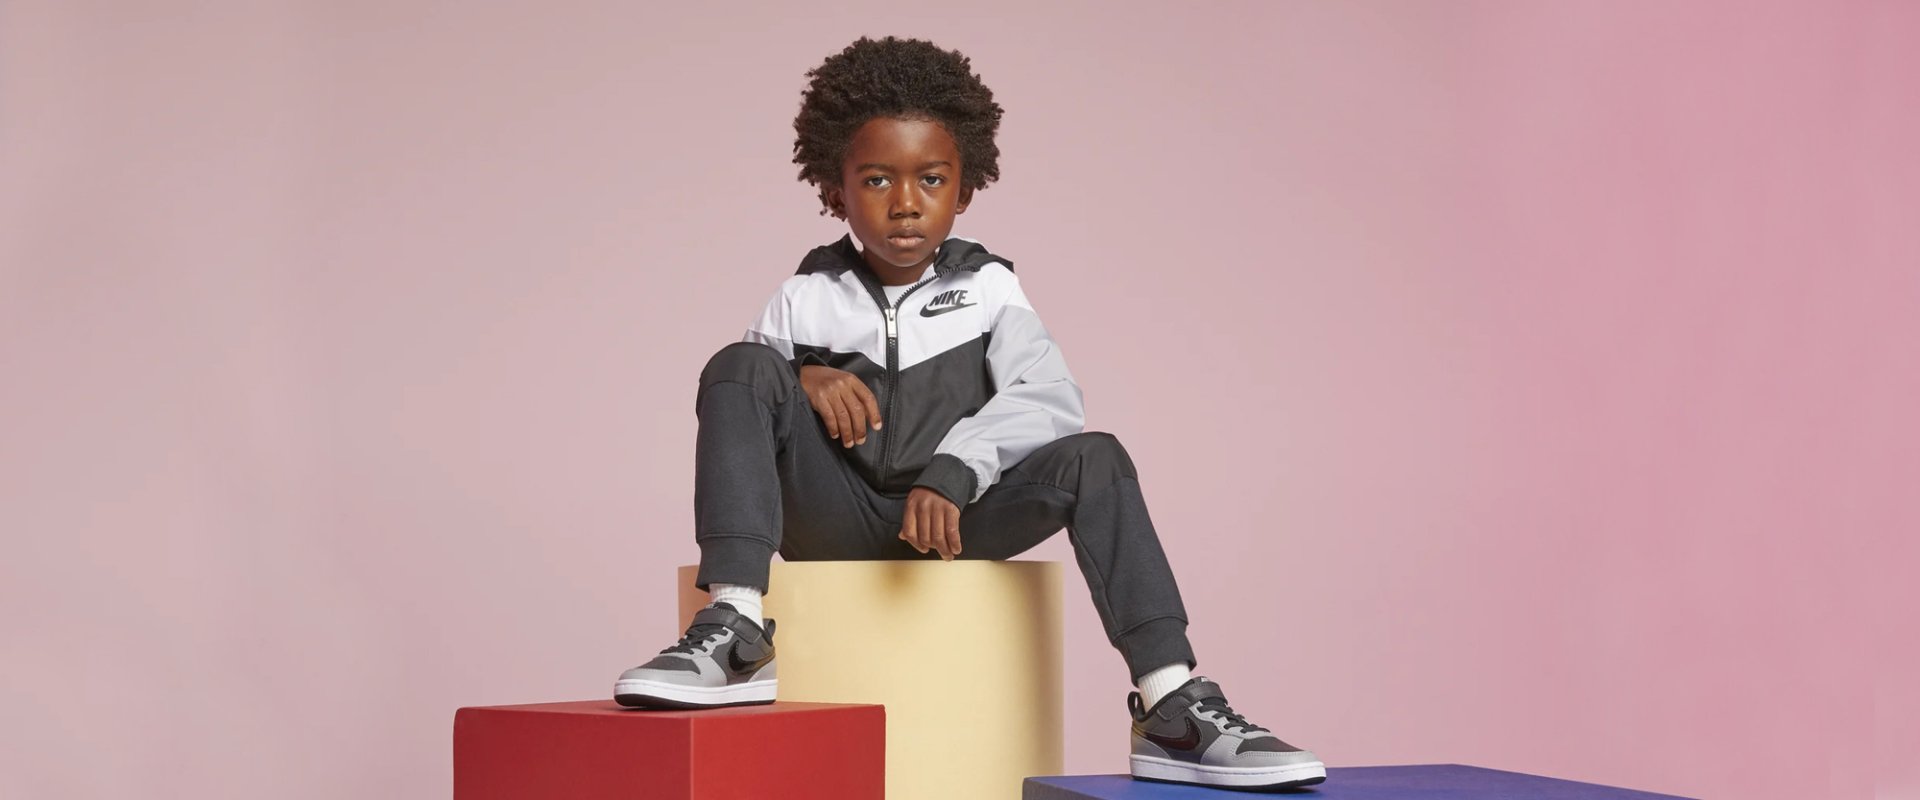 Детские товары для спорта и активного отдыха бренда Nike винтернет-магазине MEGASPORT